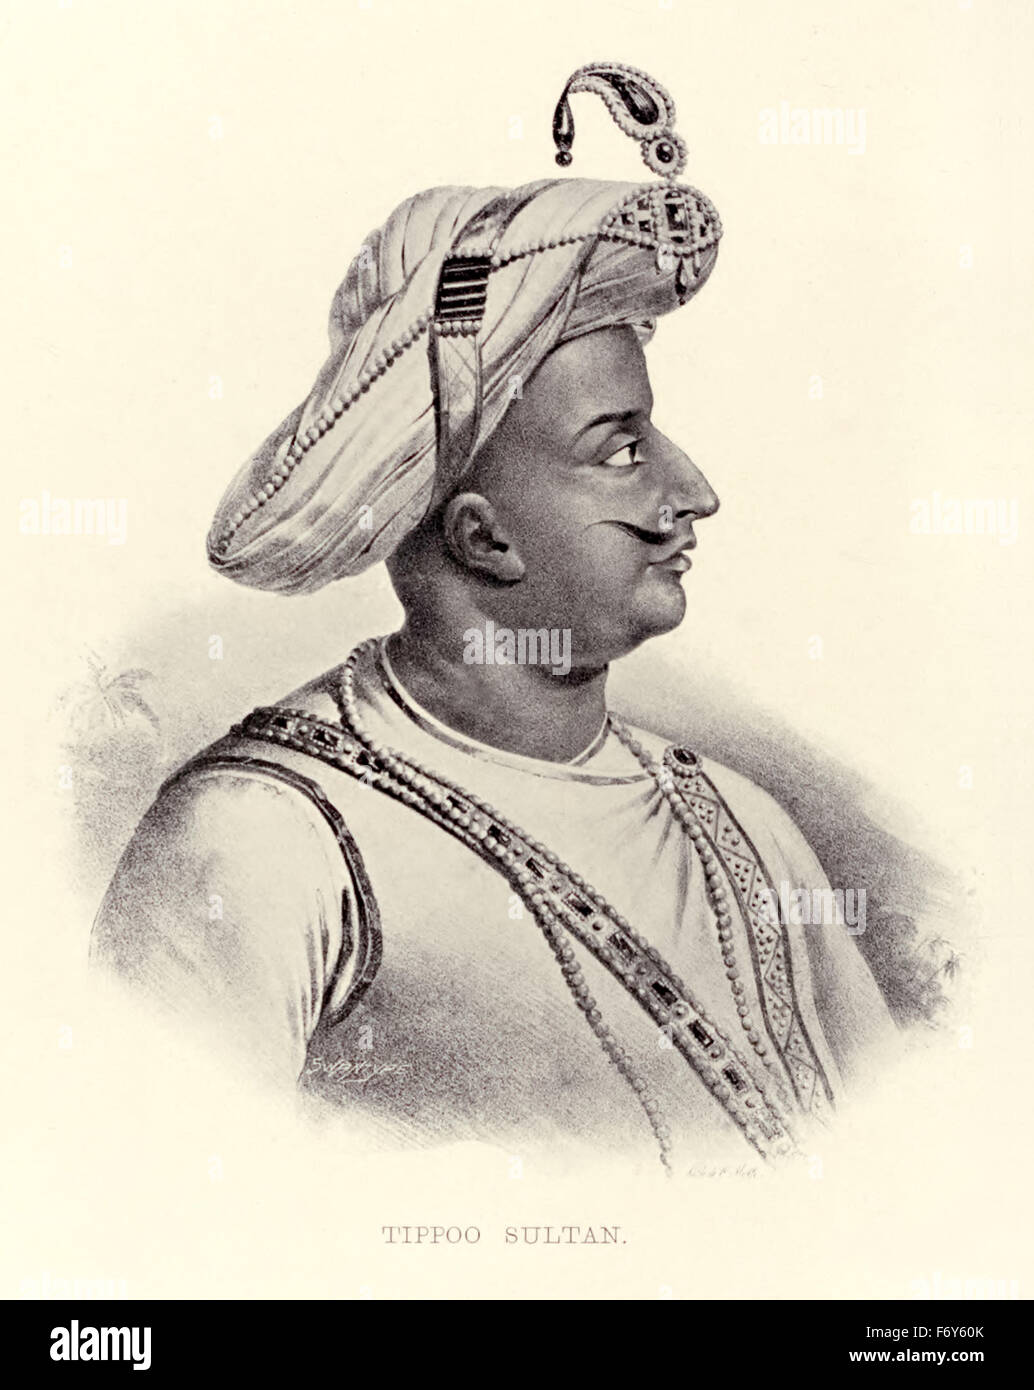 Tippoo (aka Tipu), Sultan (1750-1799), ältester Sohn von Sultan Hyder Ali von Mysore (siehe Bild F0E6FA) und Herrscher über das Königreich von Mysore (Krönung 1782). Tippoo erweitert die Eisen-Schreibweise Mysorean Raketen und schrieb die militärische Handbuch "Fathul Mujahidin", gilt als Pionier bei der Verwendung von Raketenartillerie. Er eingesetzt die Raketen gegen Fortschritt der britischen Streitkräfte und ihre Verbündeten in ihre 1792 und 1799 Belagerung von Srirangapatna wo er den Tod fand. Stockfoto